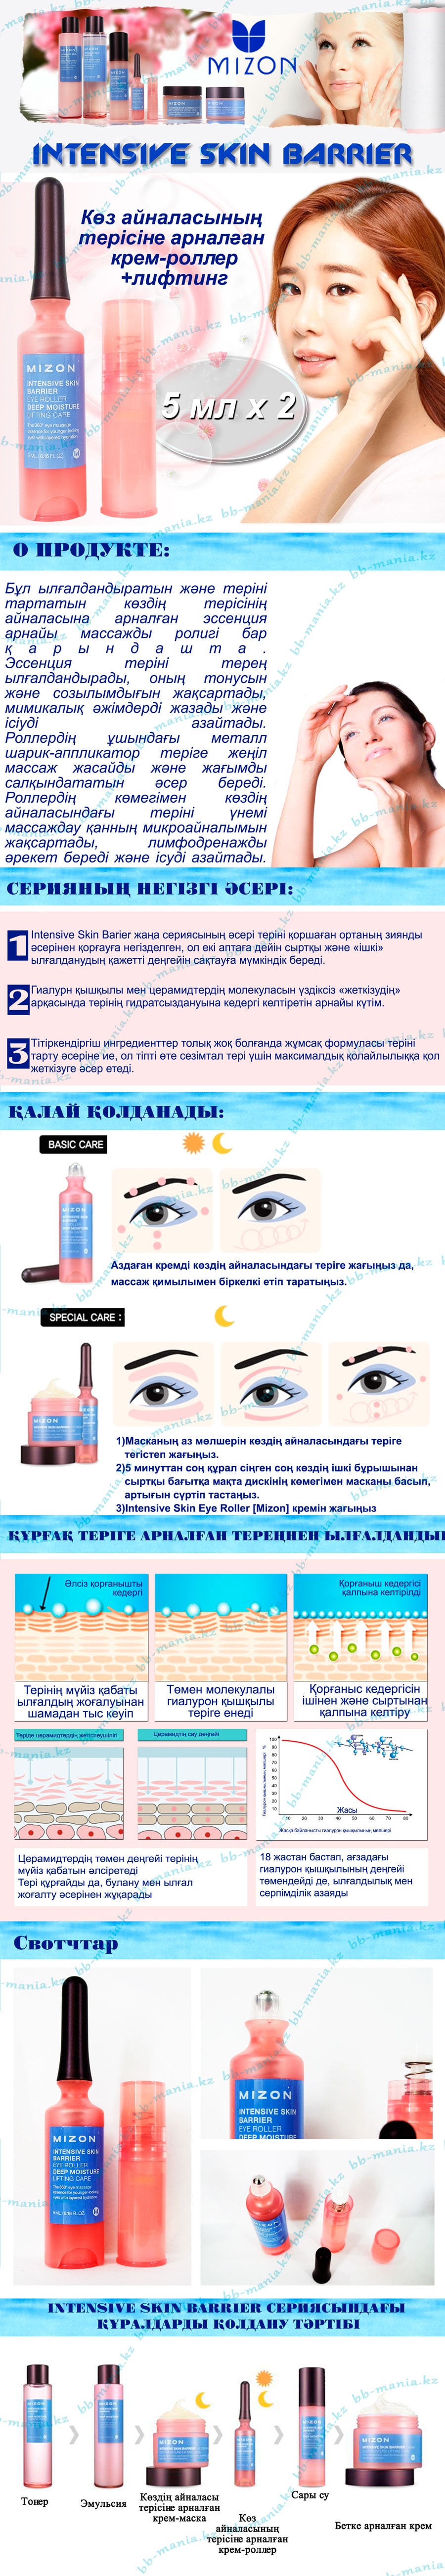 Intensive-Skin-Eye-Roller-[Mizon]-кз-min